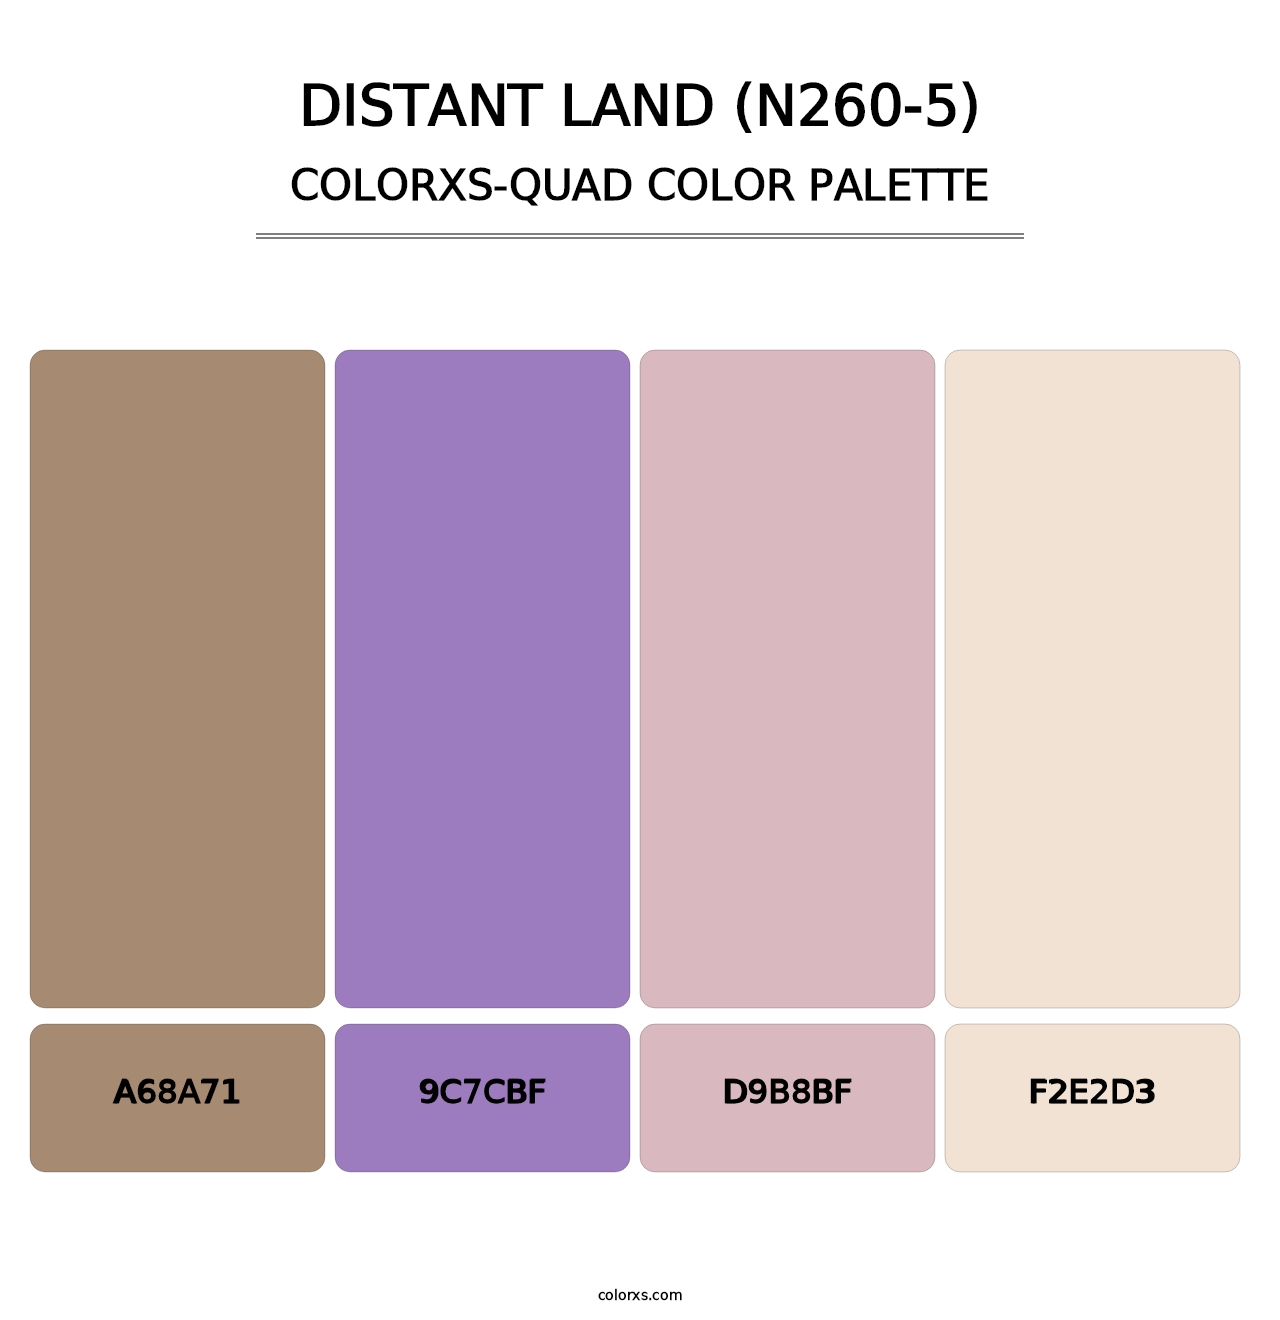 Distant Land (N260-5) - Colorxs Quad Palette